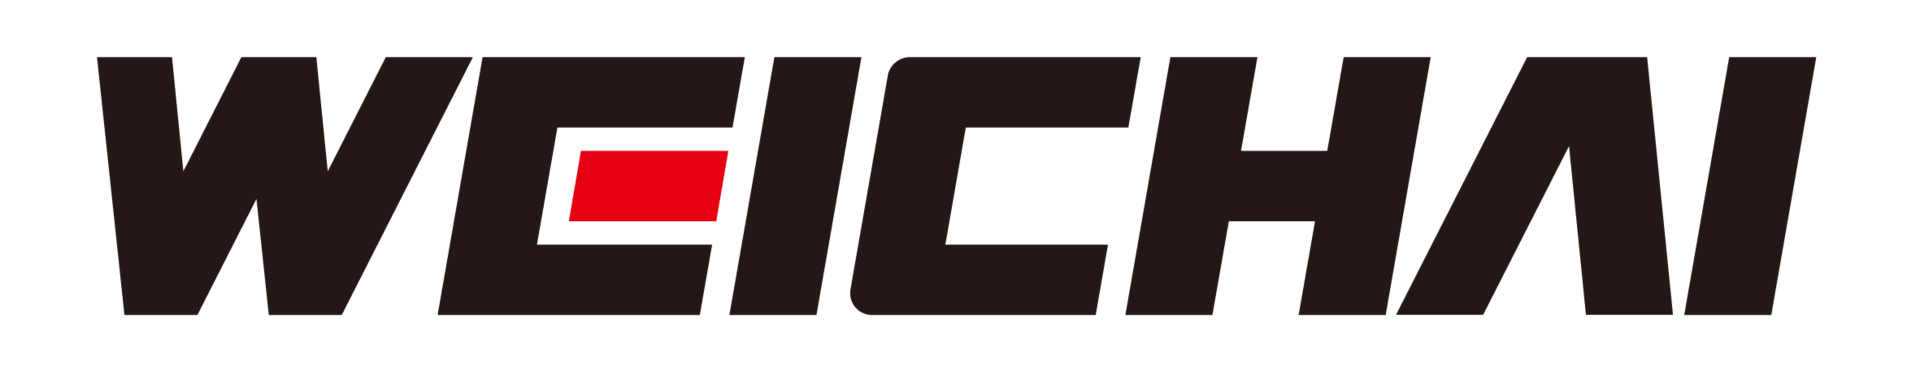 Weichai Brand Logo